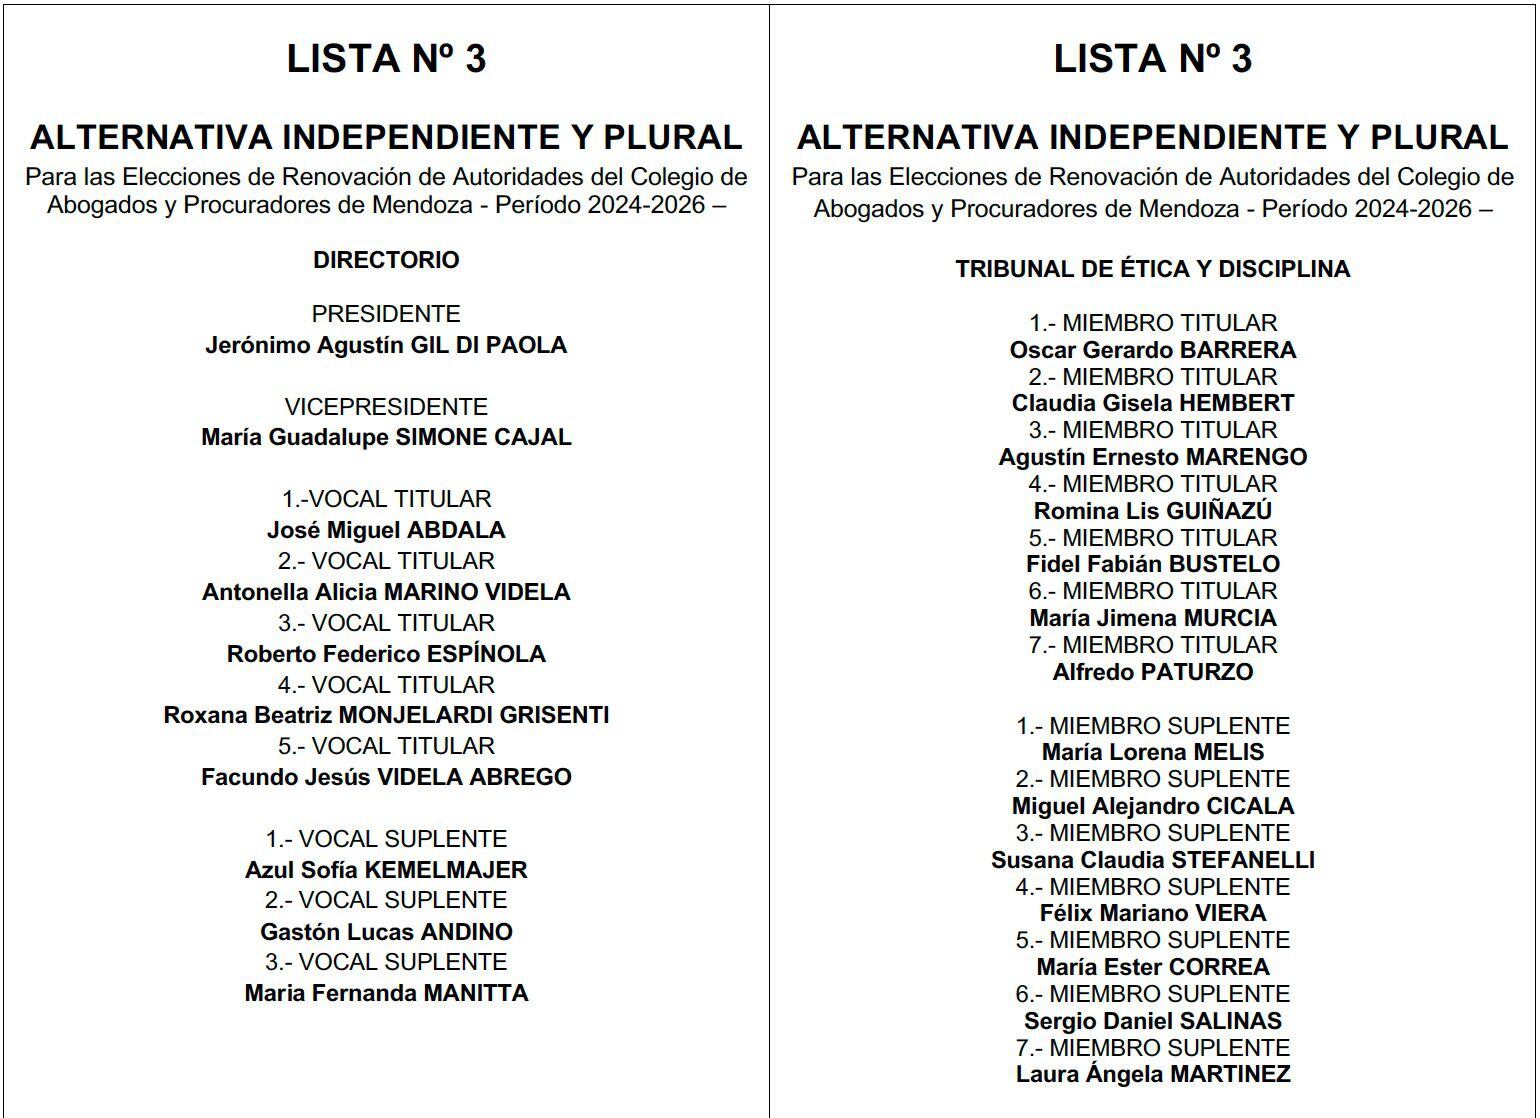 La lista es encabezada por Jerónimo Gil Di Paola y Guadalupe Simone Cajal para conducir el Colegio de Abogados.